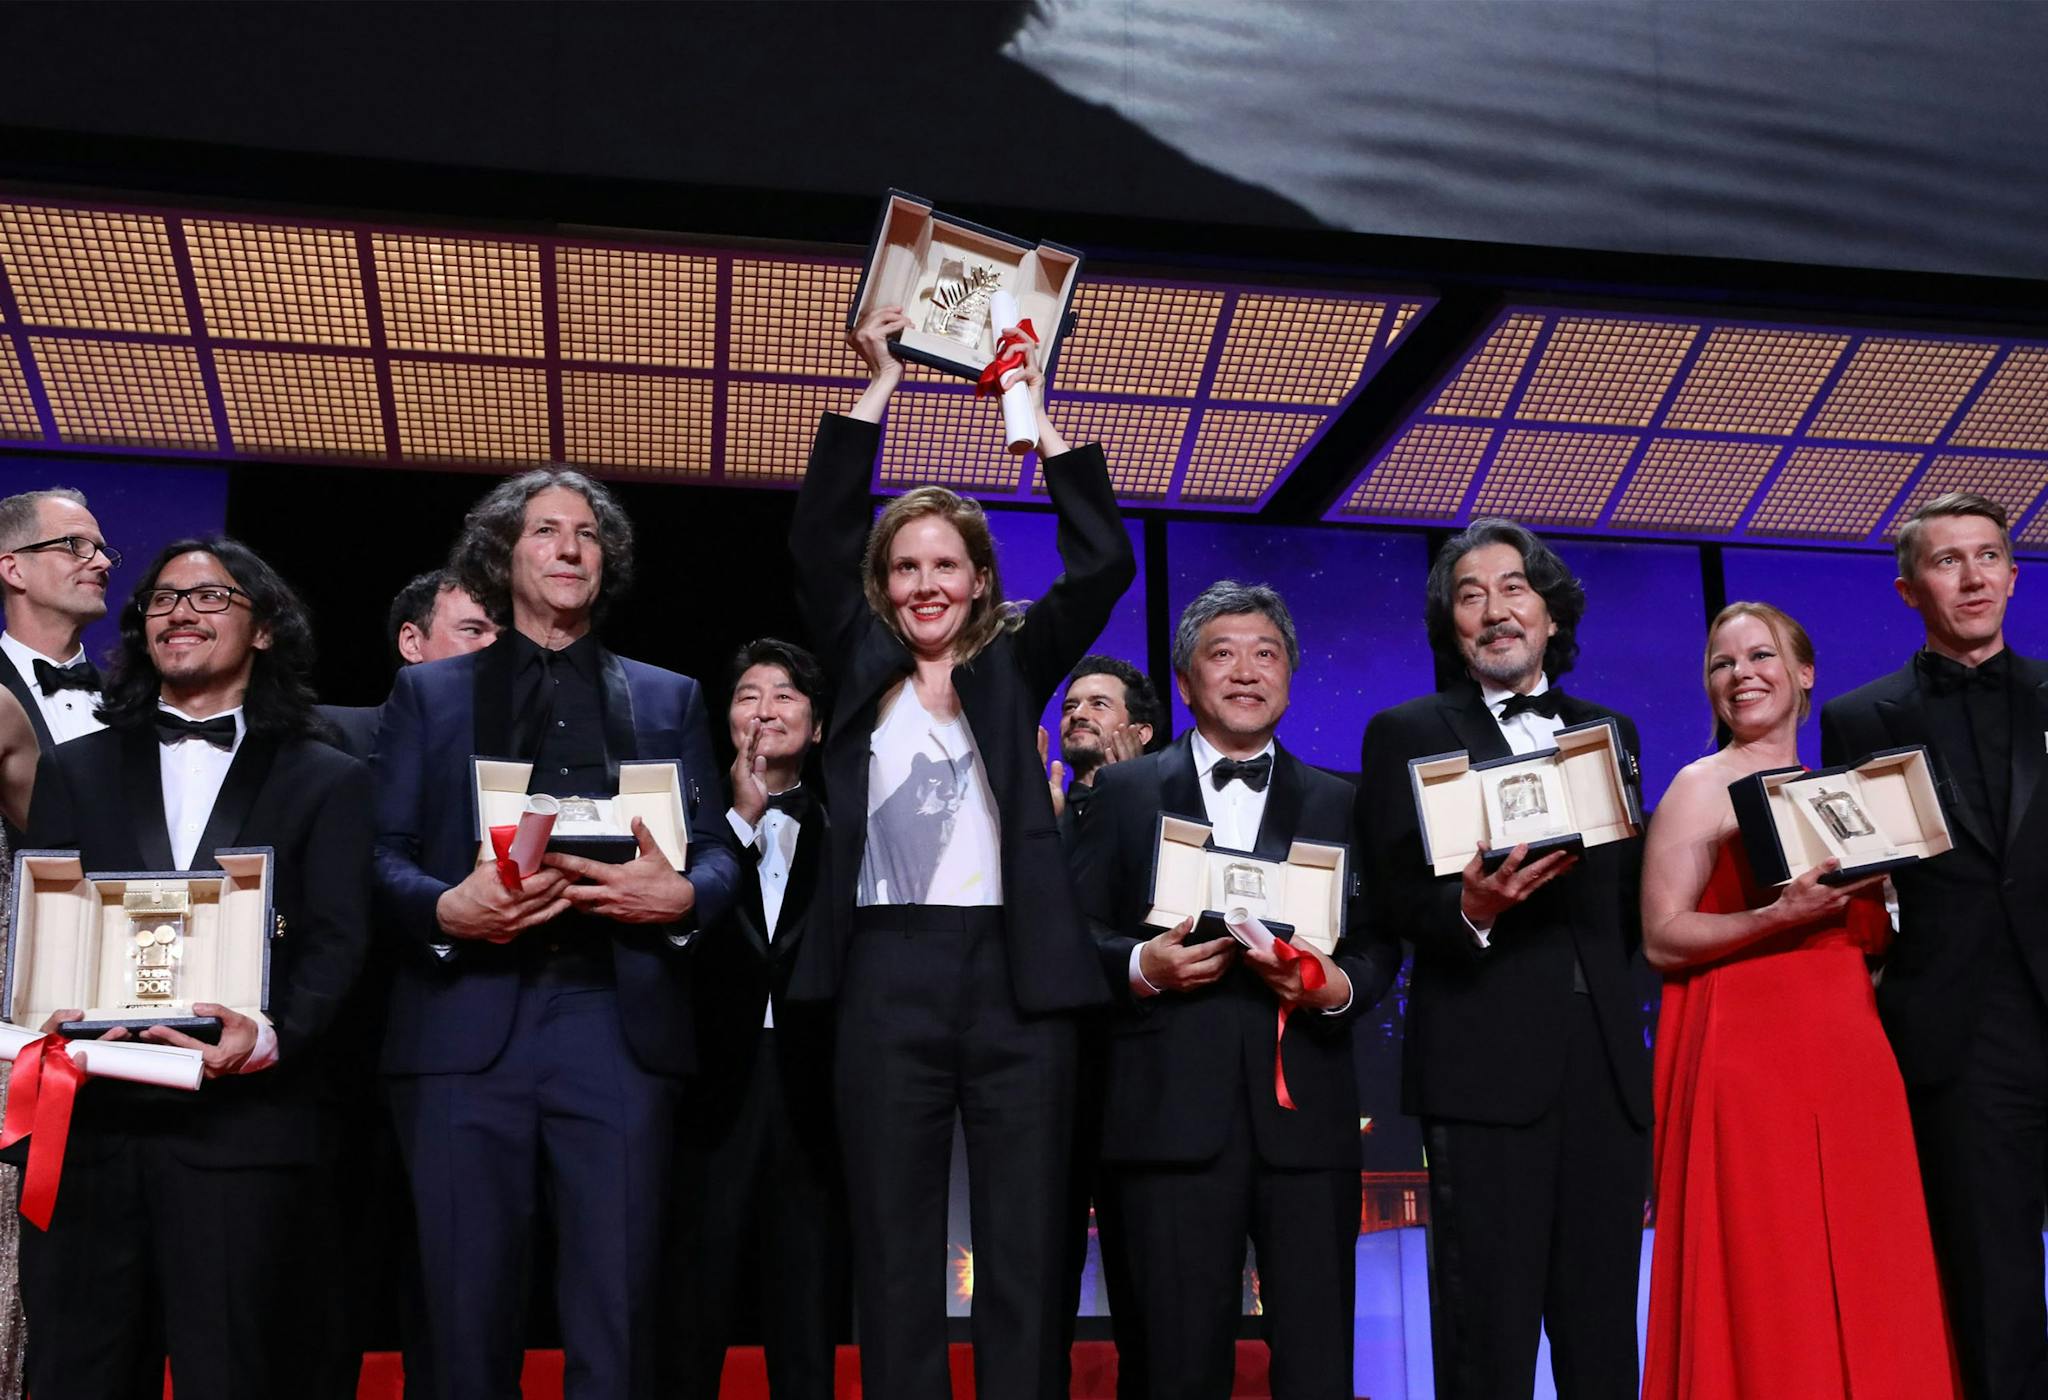 La directora francesa Justine Triet sostiene la Palma de Oro del Festival de Cannes por 'Anatomía de una caída'